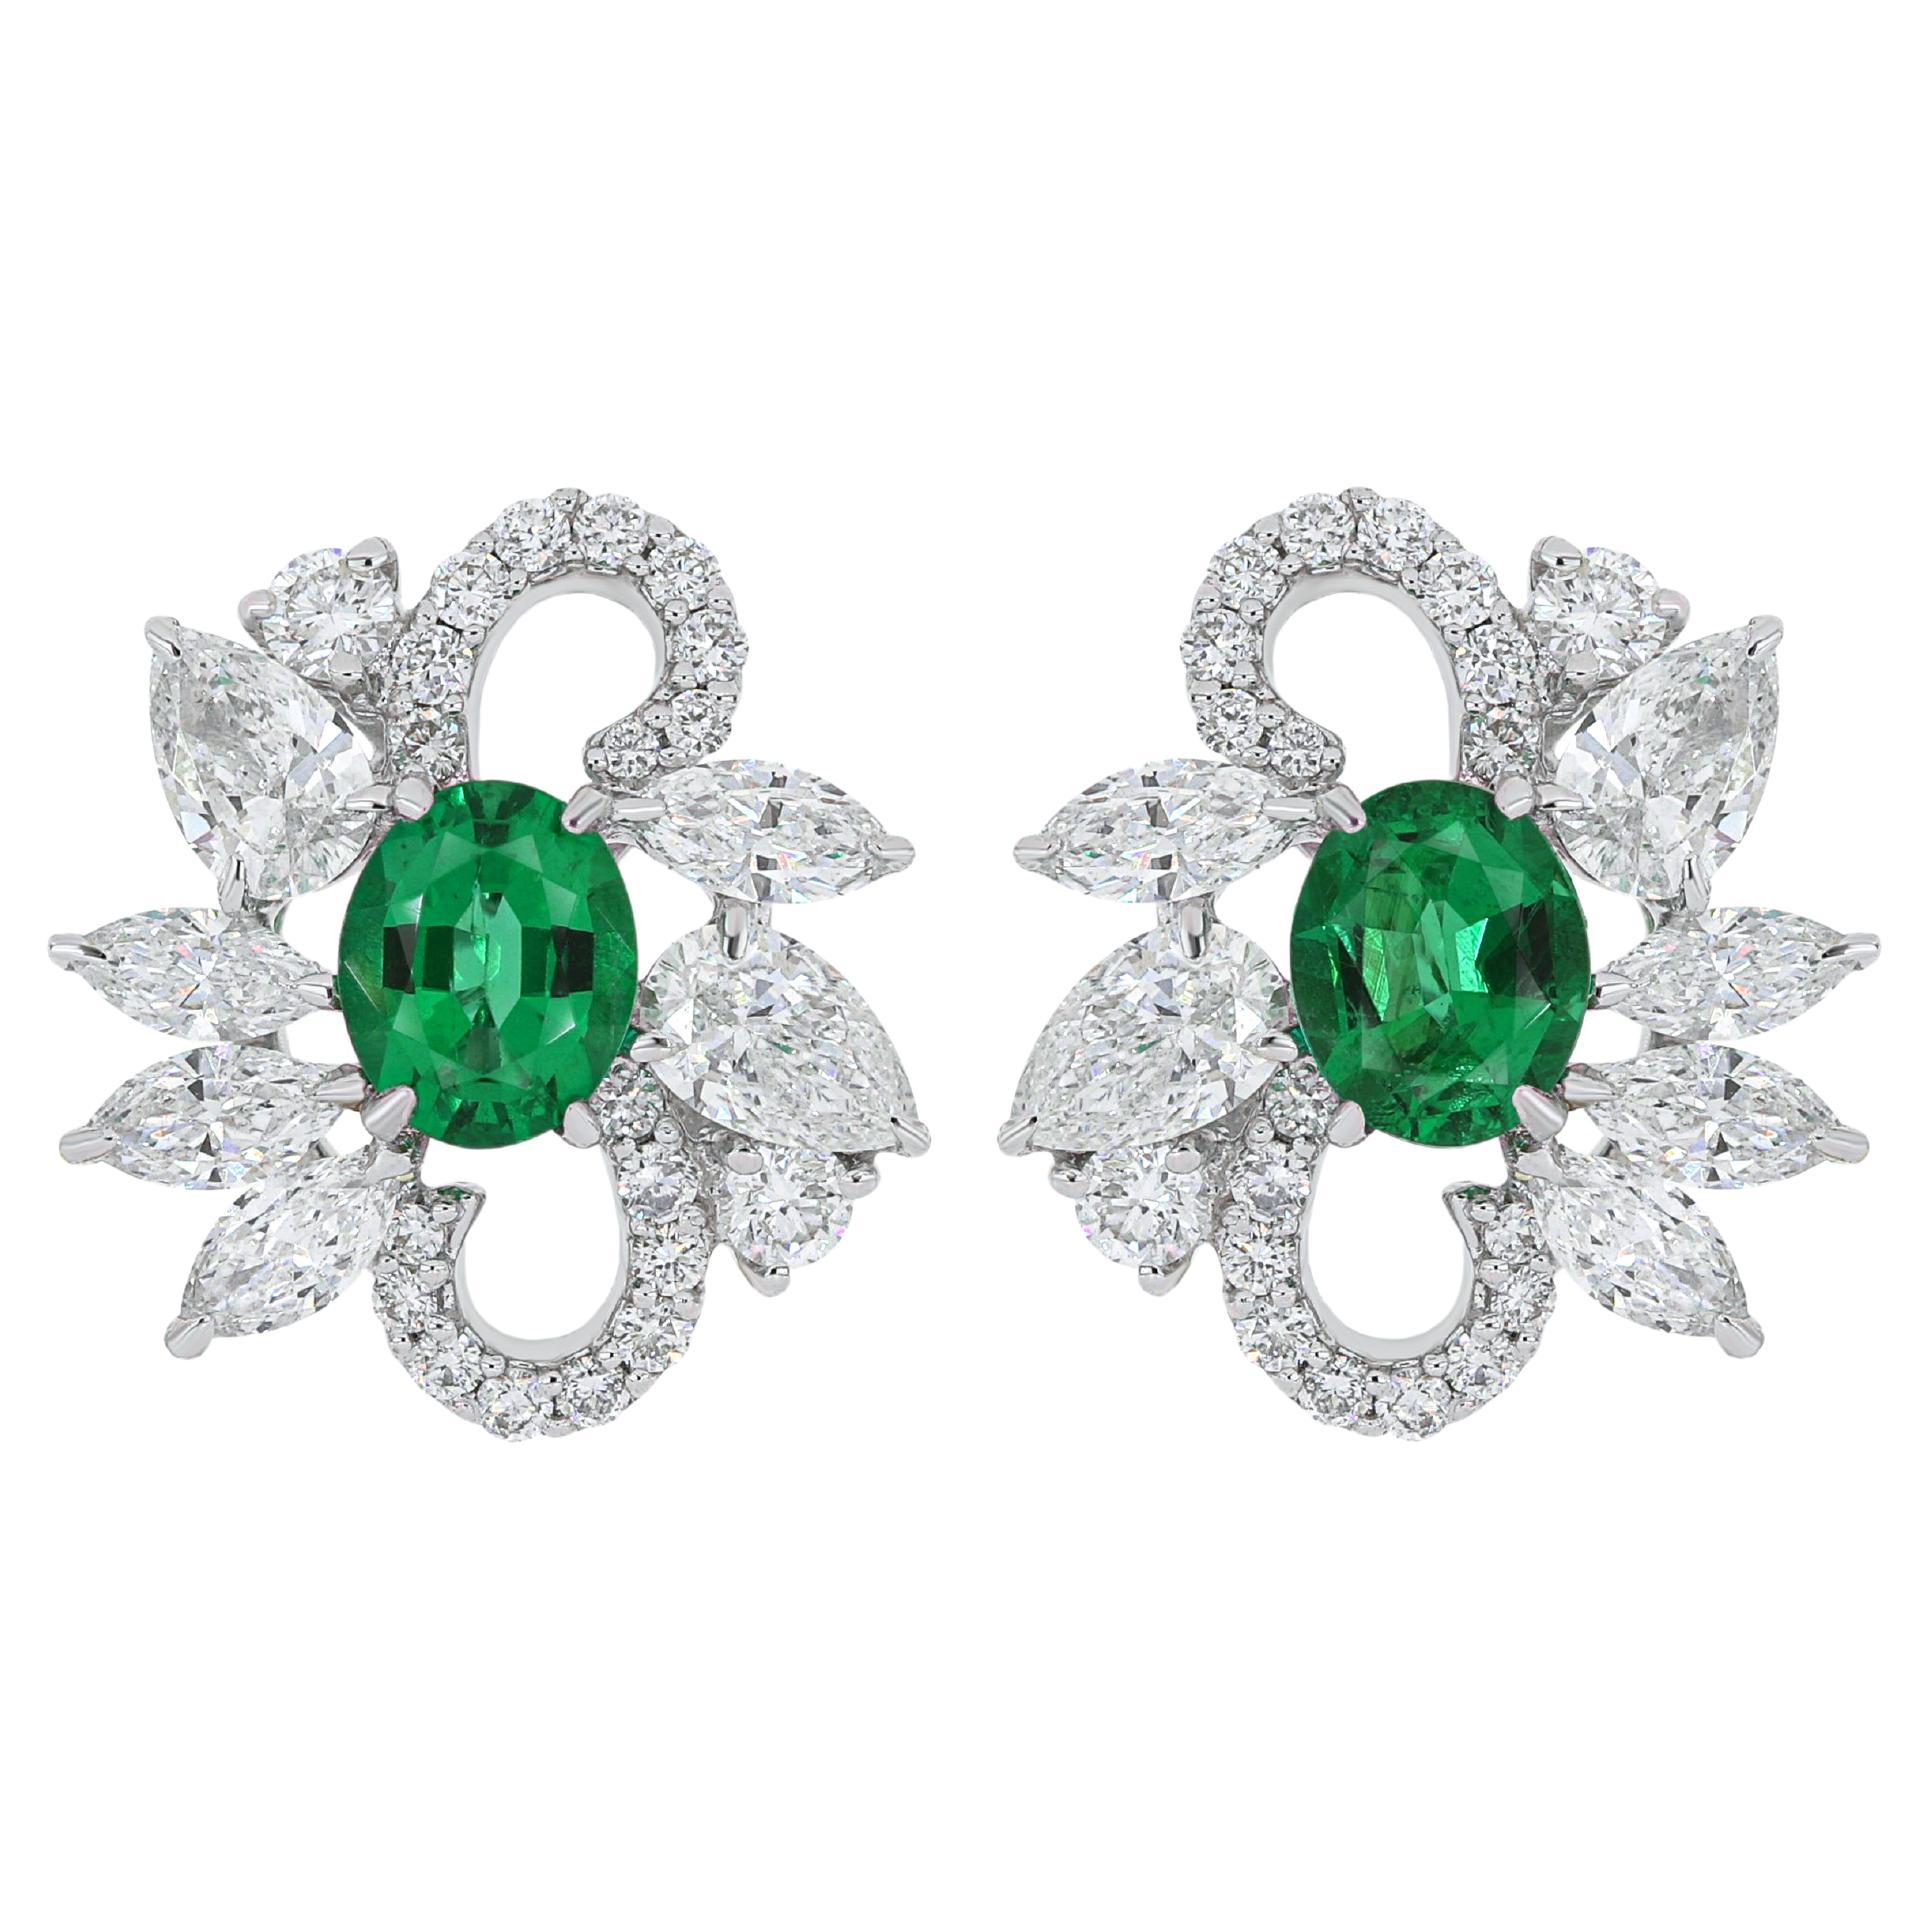 Ohrring mit Smaragd- und Diamantbesatz aus 18 Karat Weißgold Handcraft-Ohrring